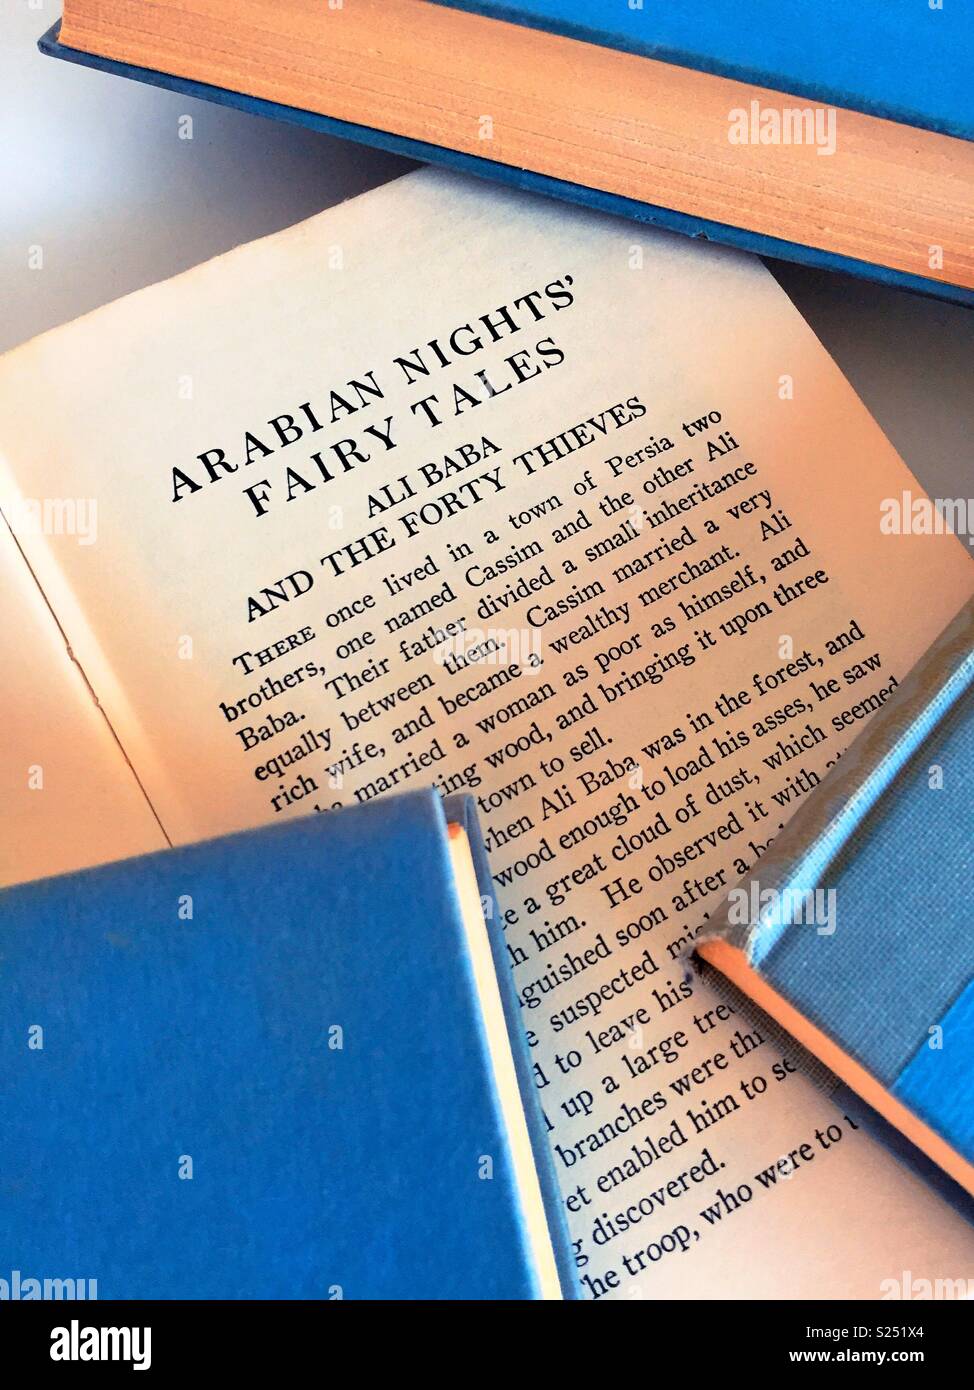 In der Nähe des Arabian nights Buch öffnen Mit anderen gebundene Bücher in den Vereinigten Staaten. Stockfoto